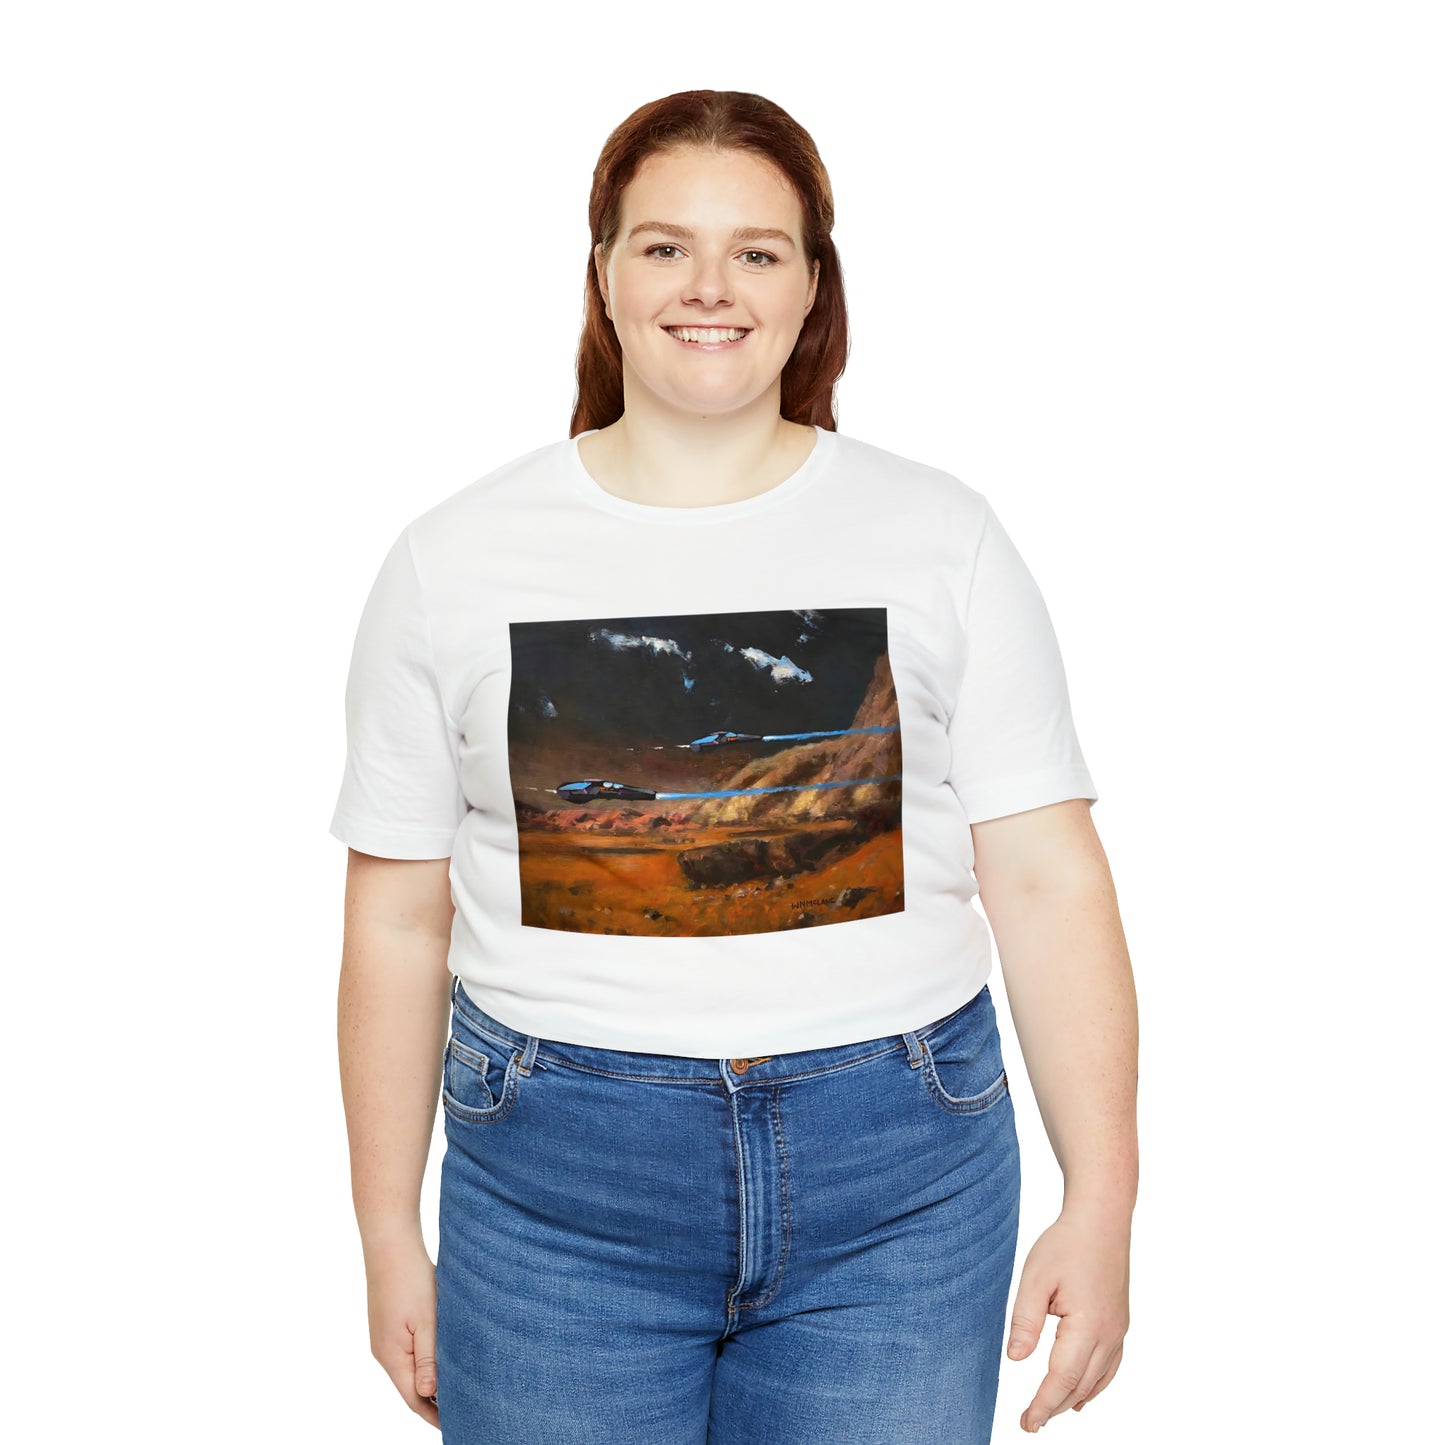 Perimeter Patrol, Mars T-Shirt